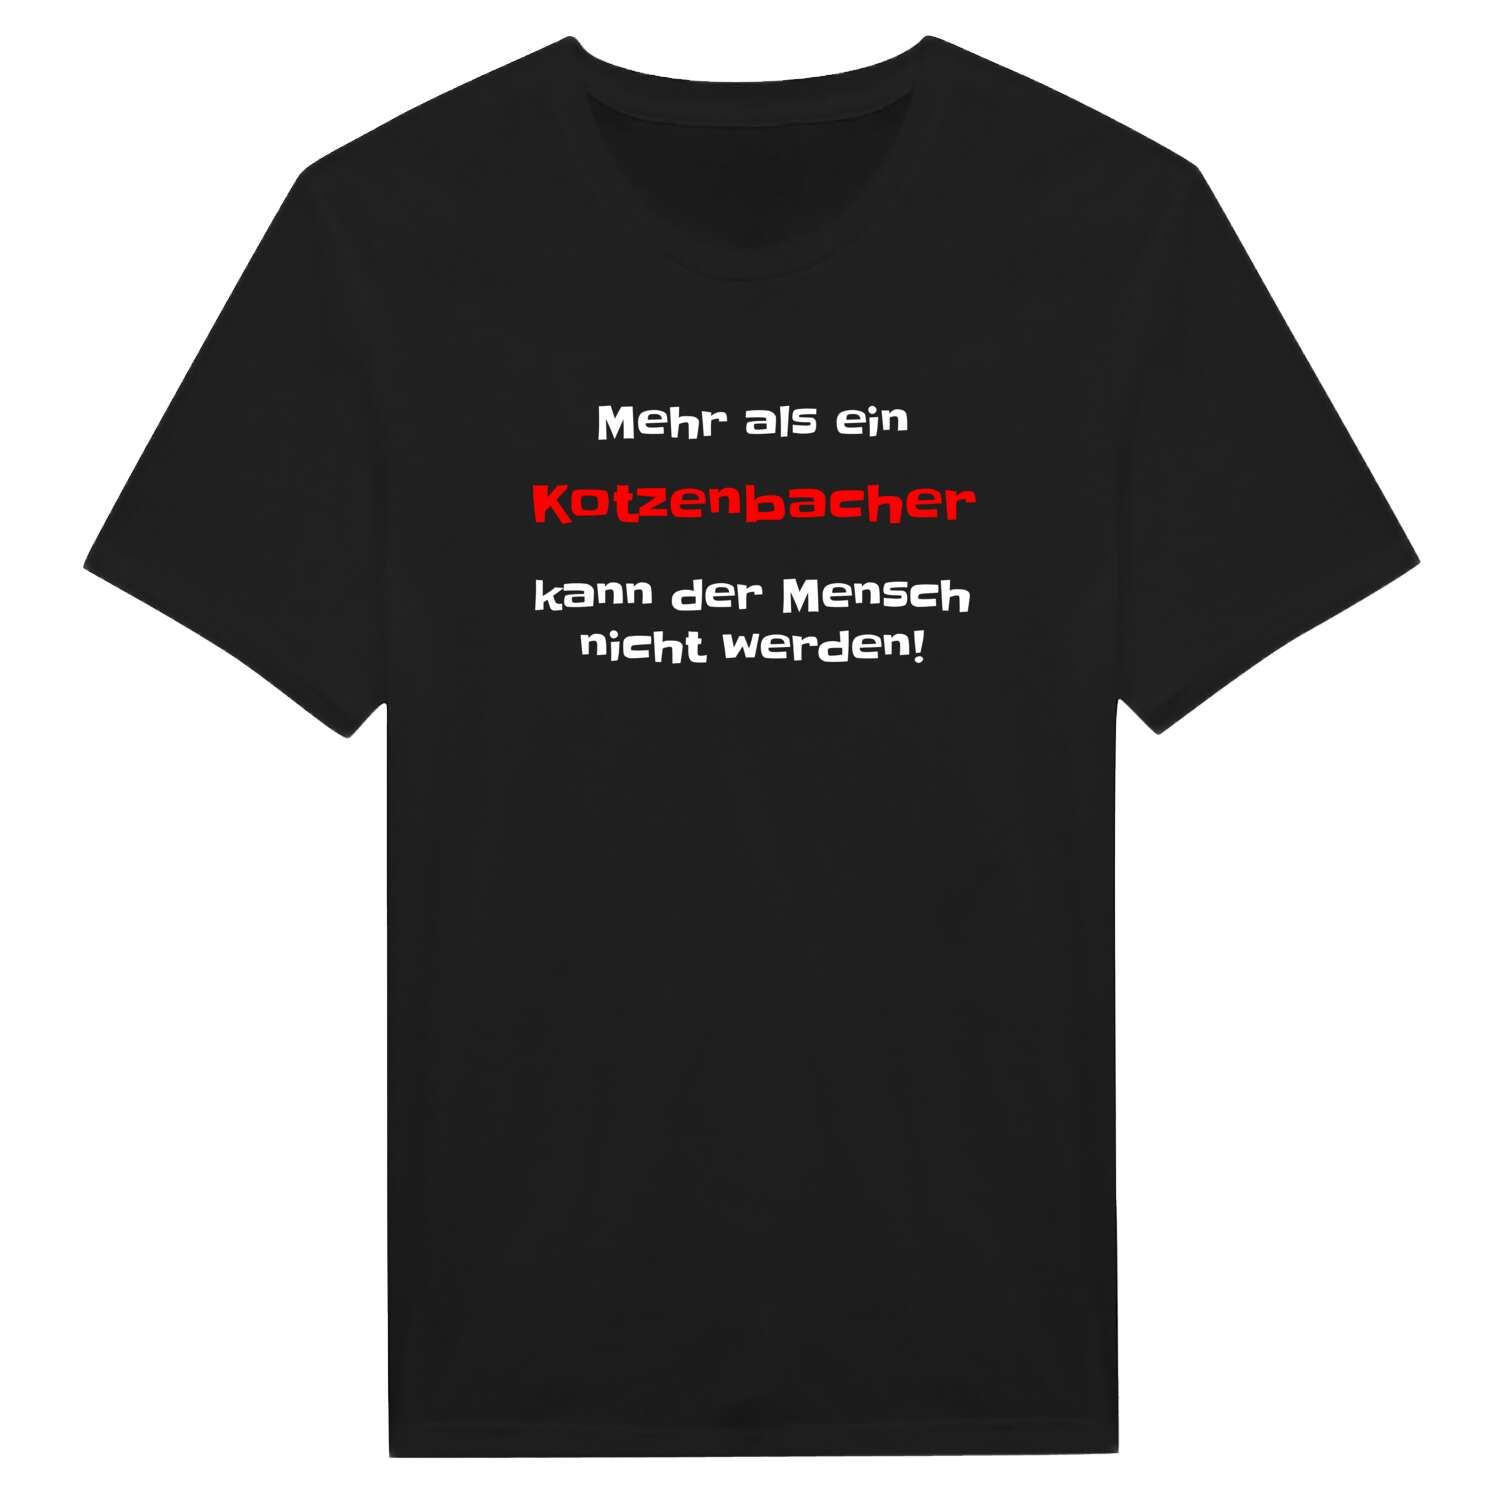 Kotzenbach T-Shirt »Mehr als ein«